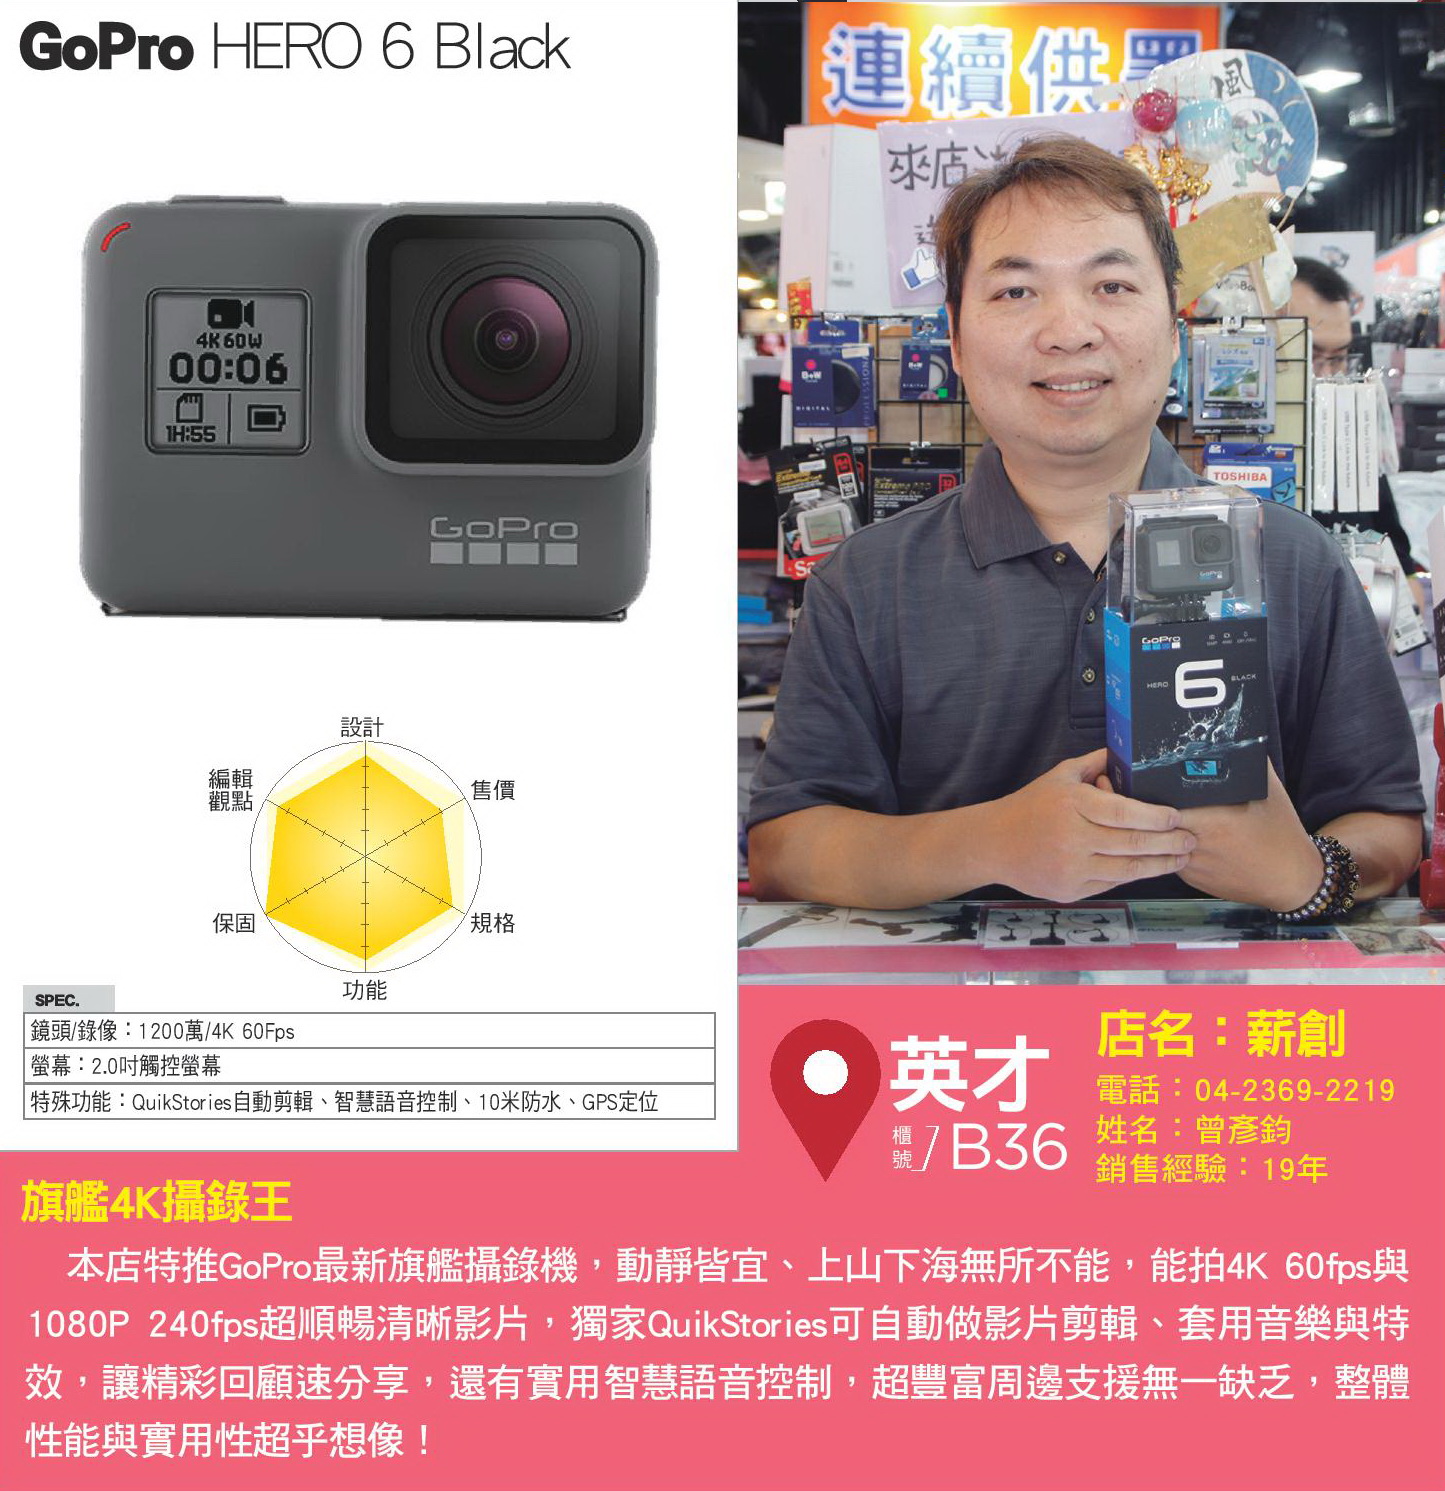 GoPro HERO 6 Black.jpg